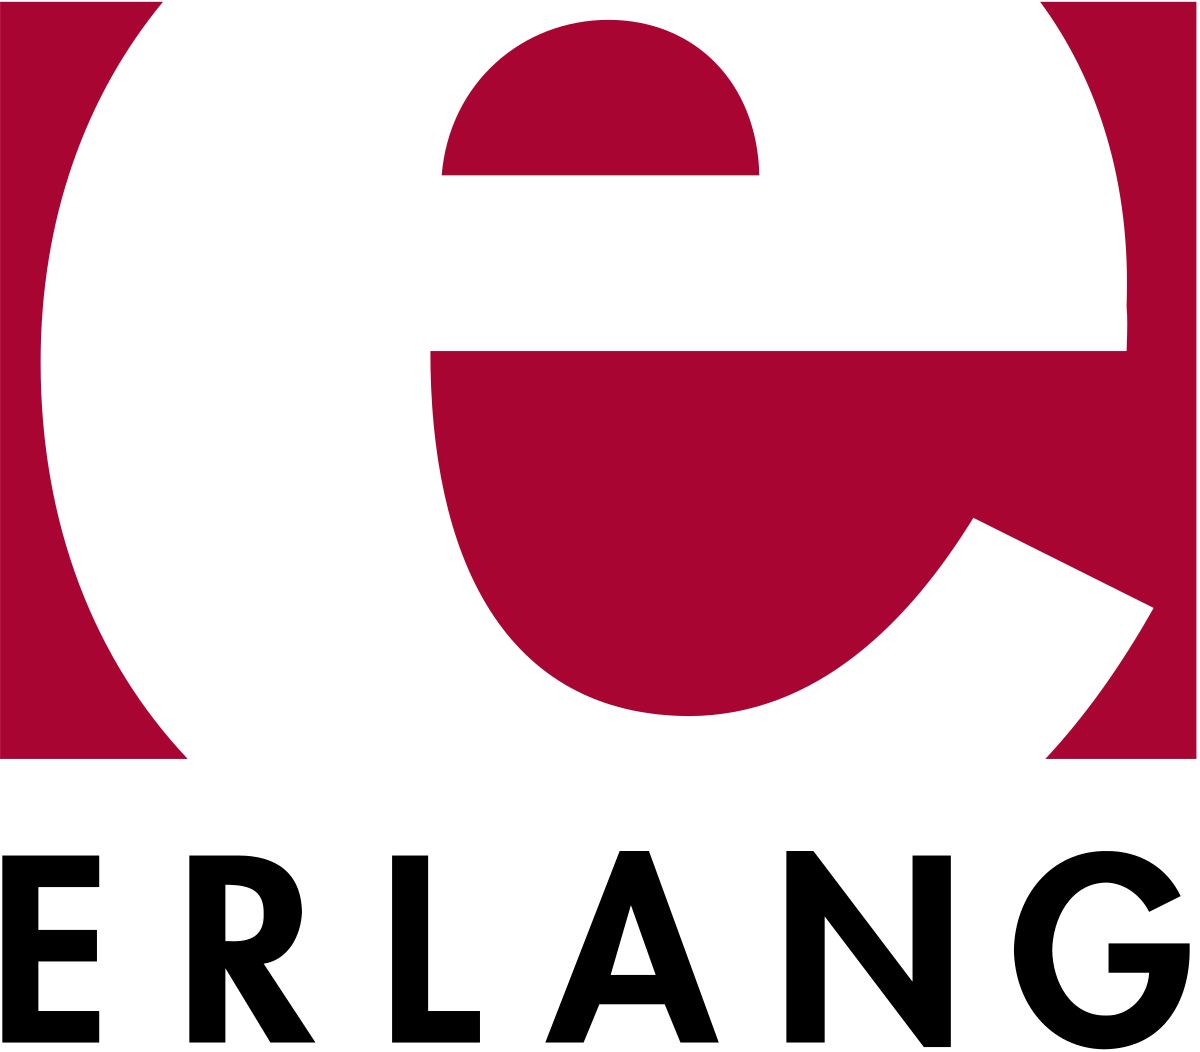 Erlang_logo